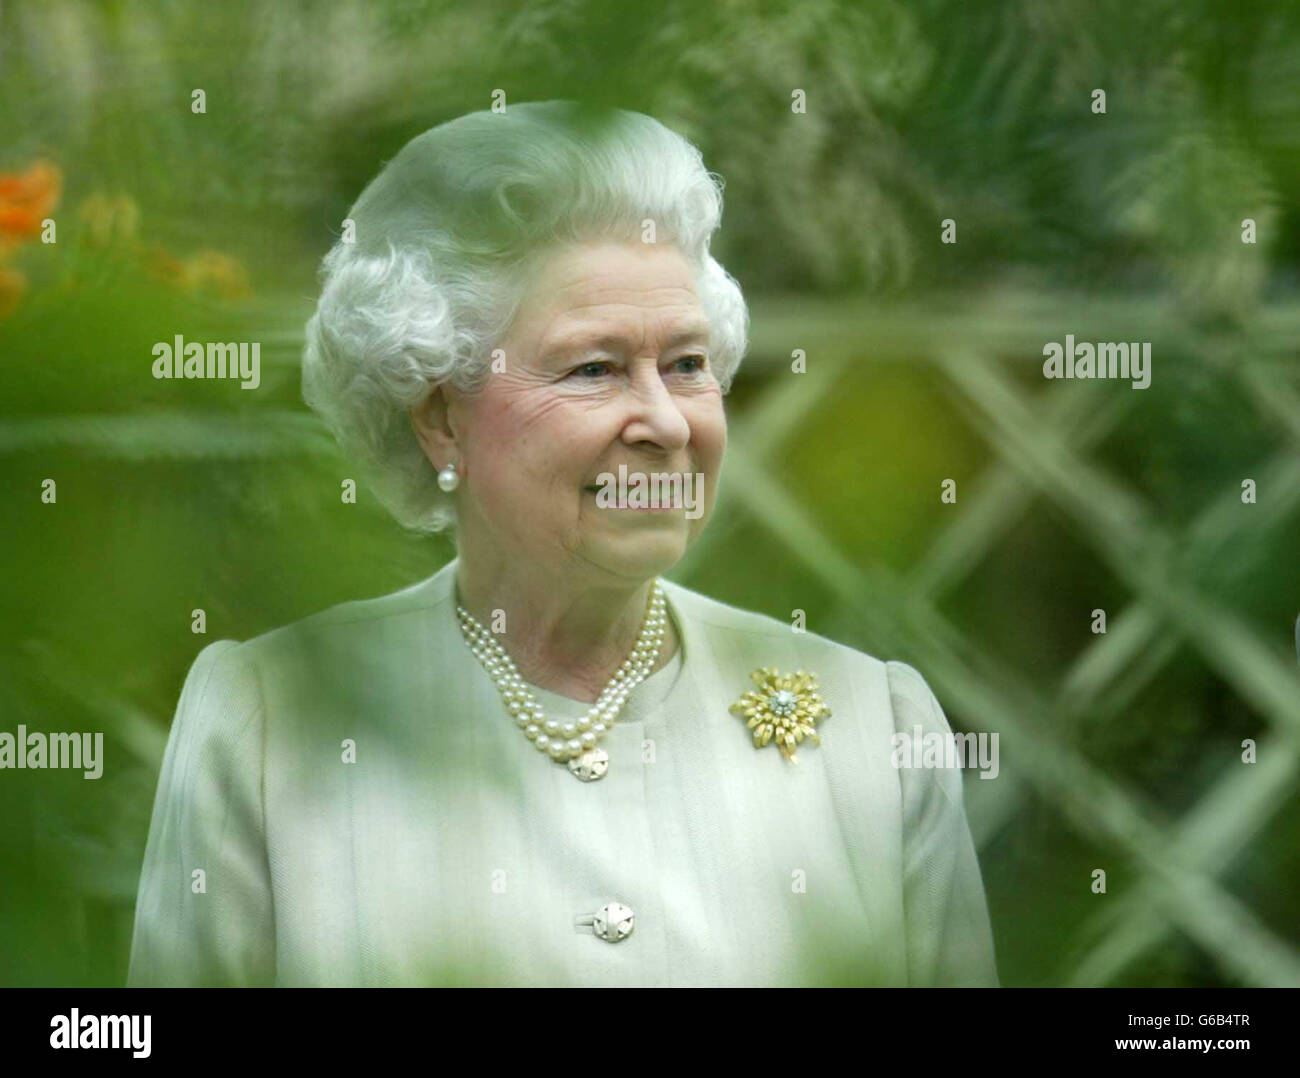 Spettacolo dei fiori della regina Chelsea. La Regina Elisabetta II visita il Chelsea Flower Show della Royal Horticultural Society a Londra. Foto Stock